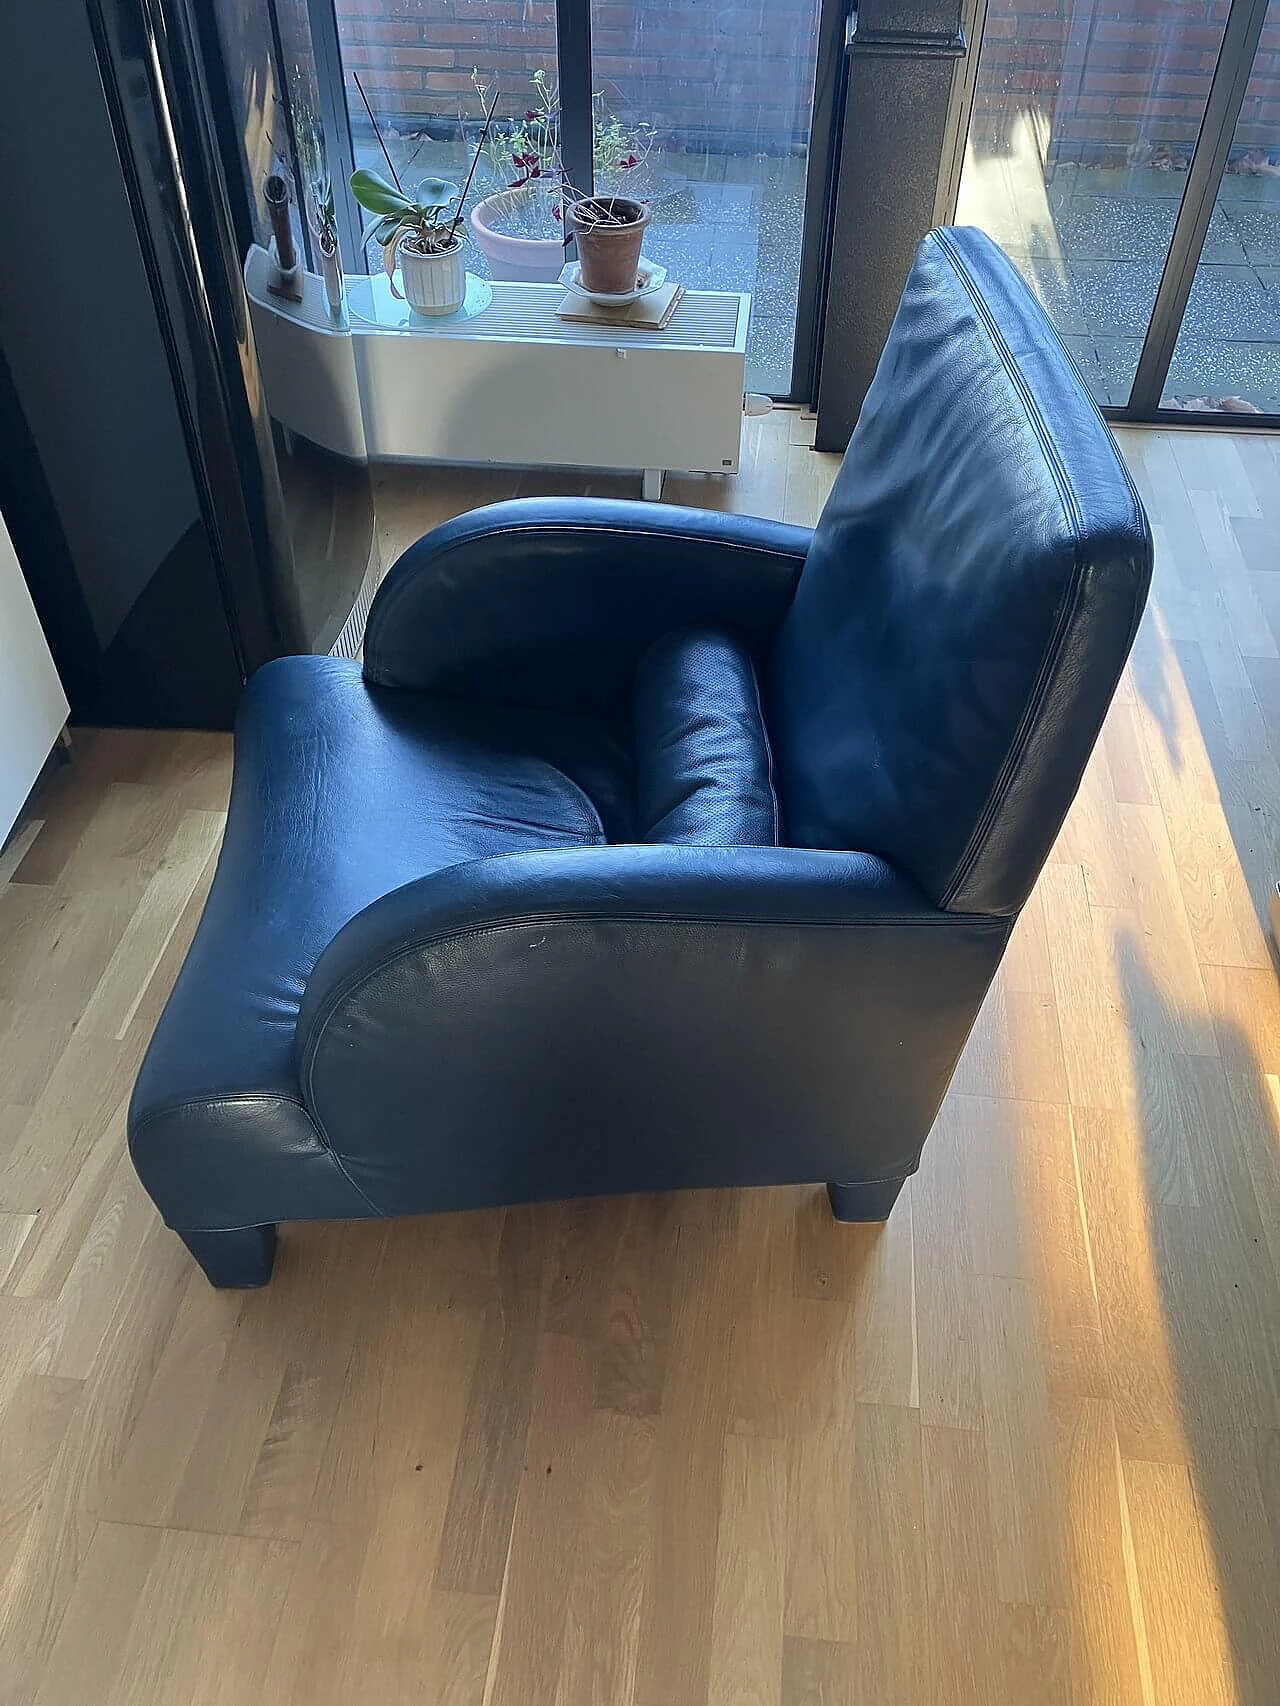 Oriente armchair in dark blue Maxalto leather by Antonio Citterio for B&B Italia 2